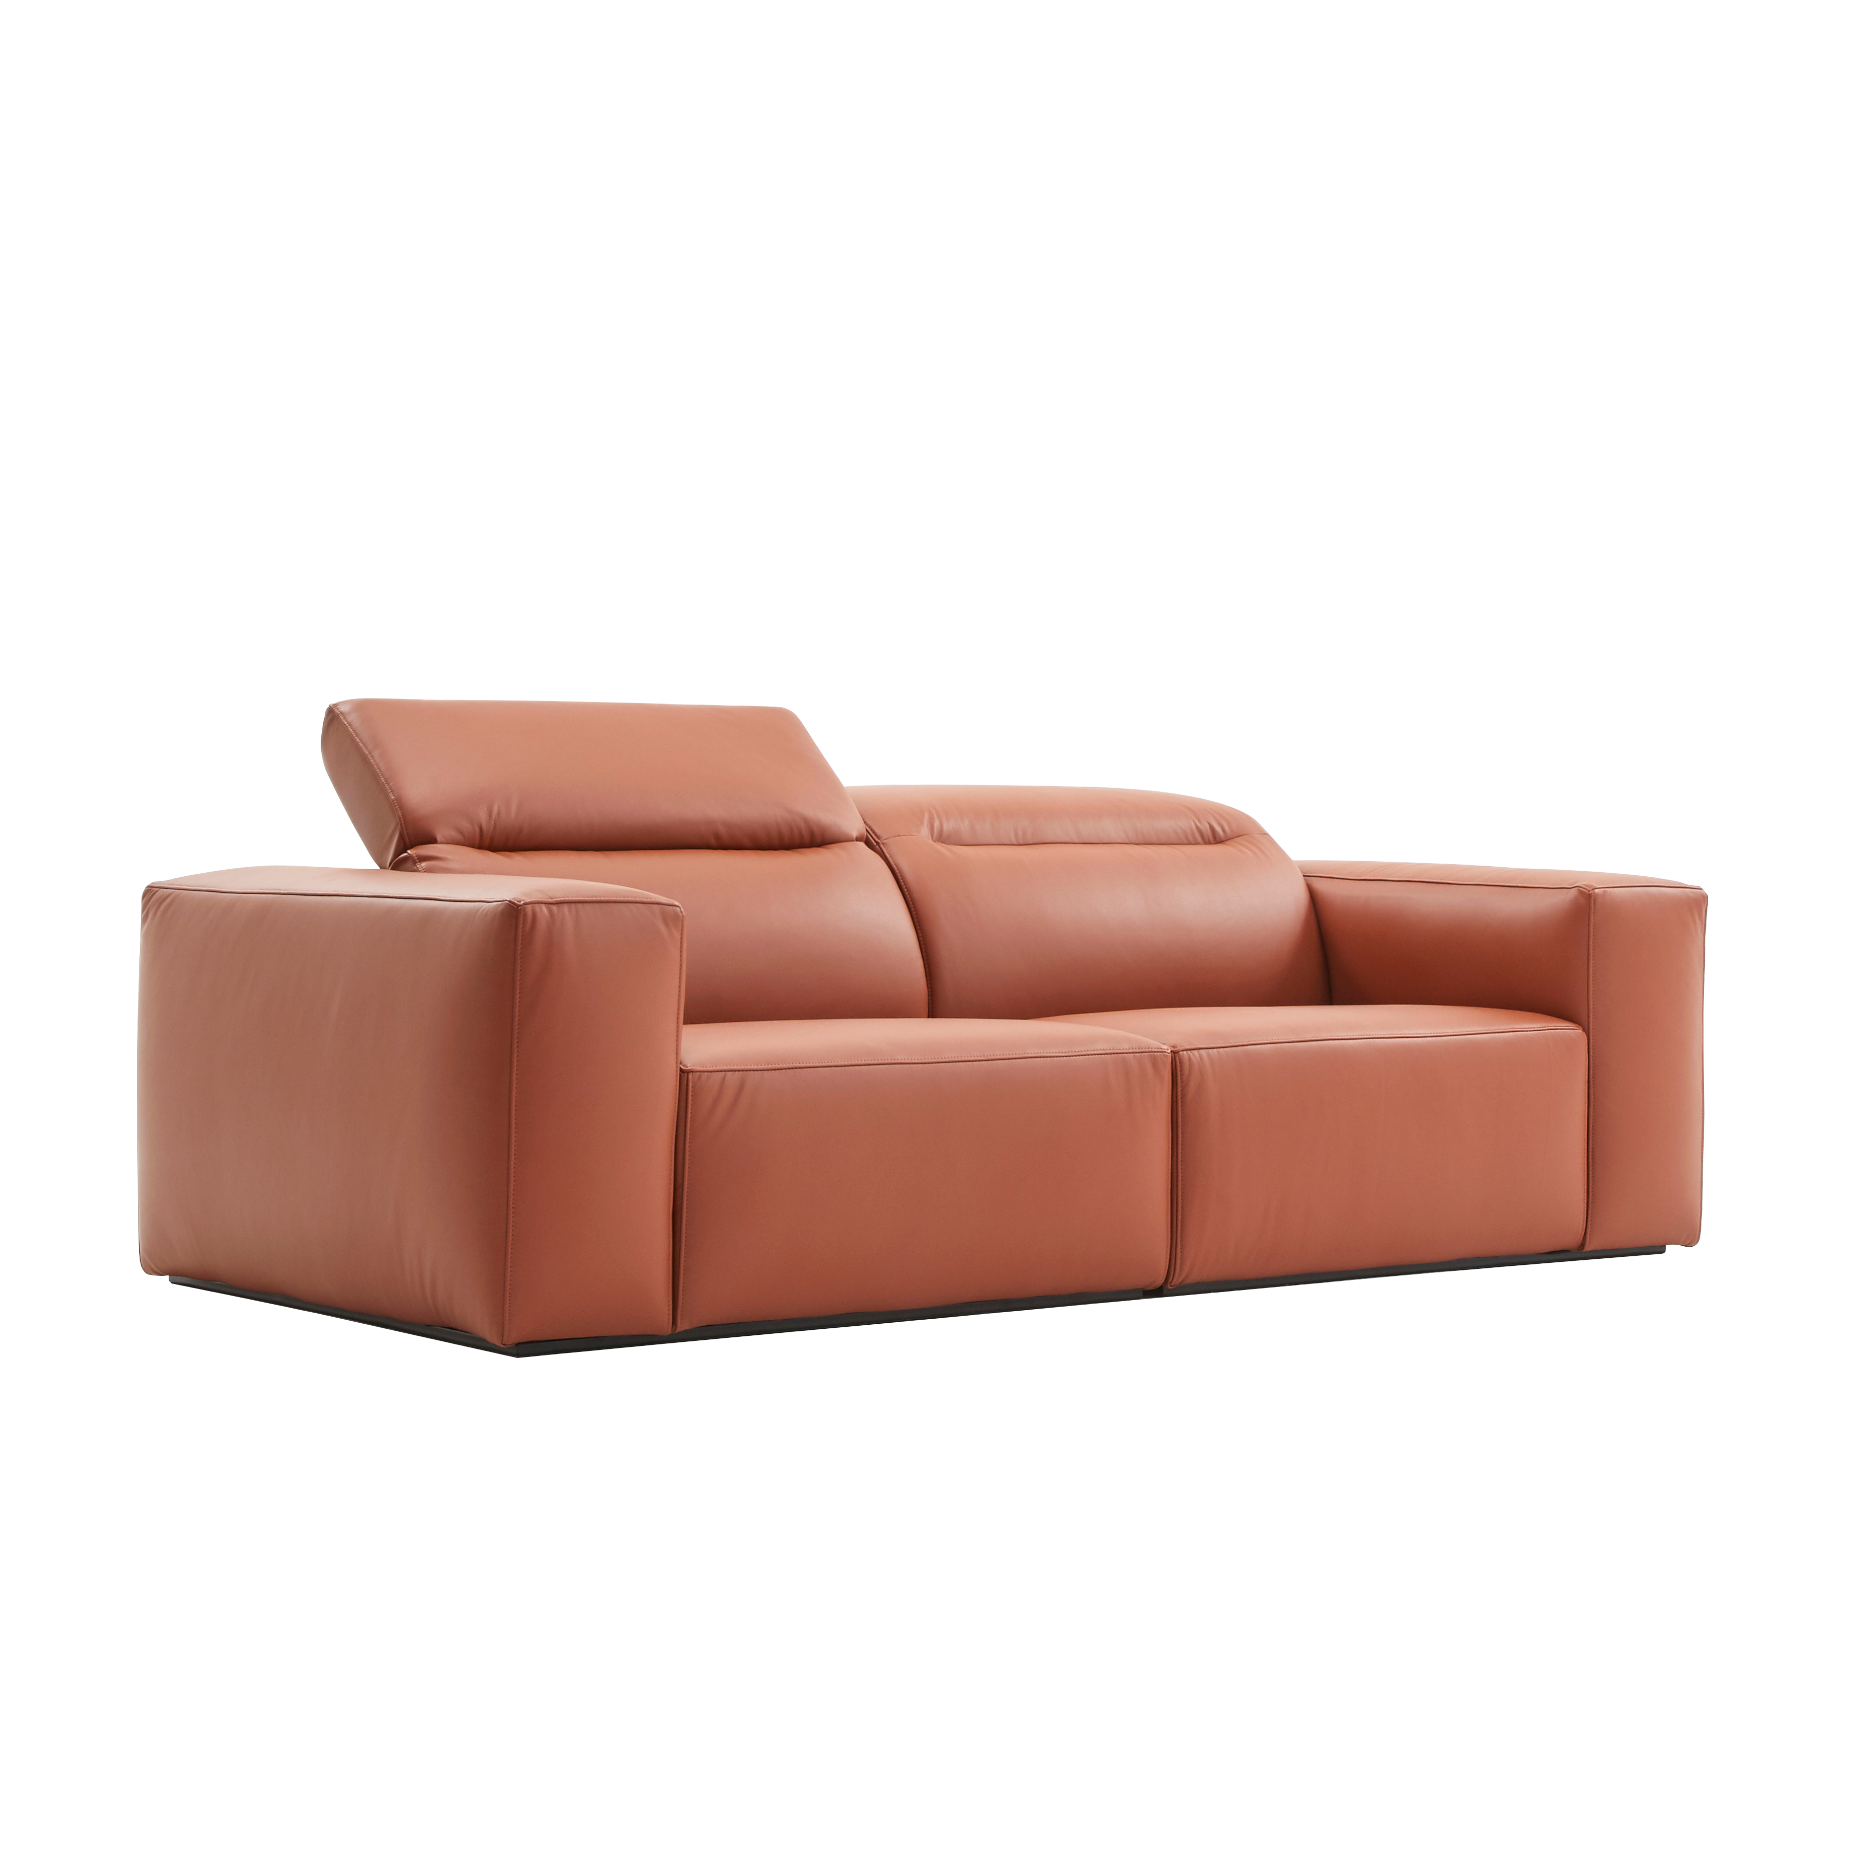 (주)도이치         DOICH ®    PEN1 modular sofa 도이치 펜1 모듈 3인소파 /(올가죽 사양/ 7개 가죽컬렉션 선택)